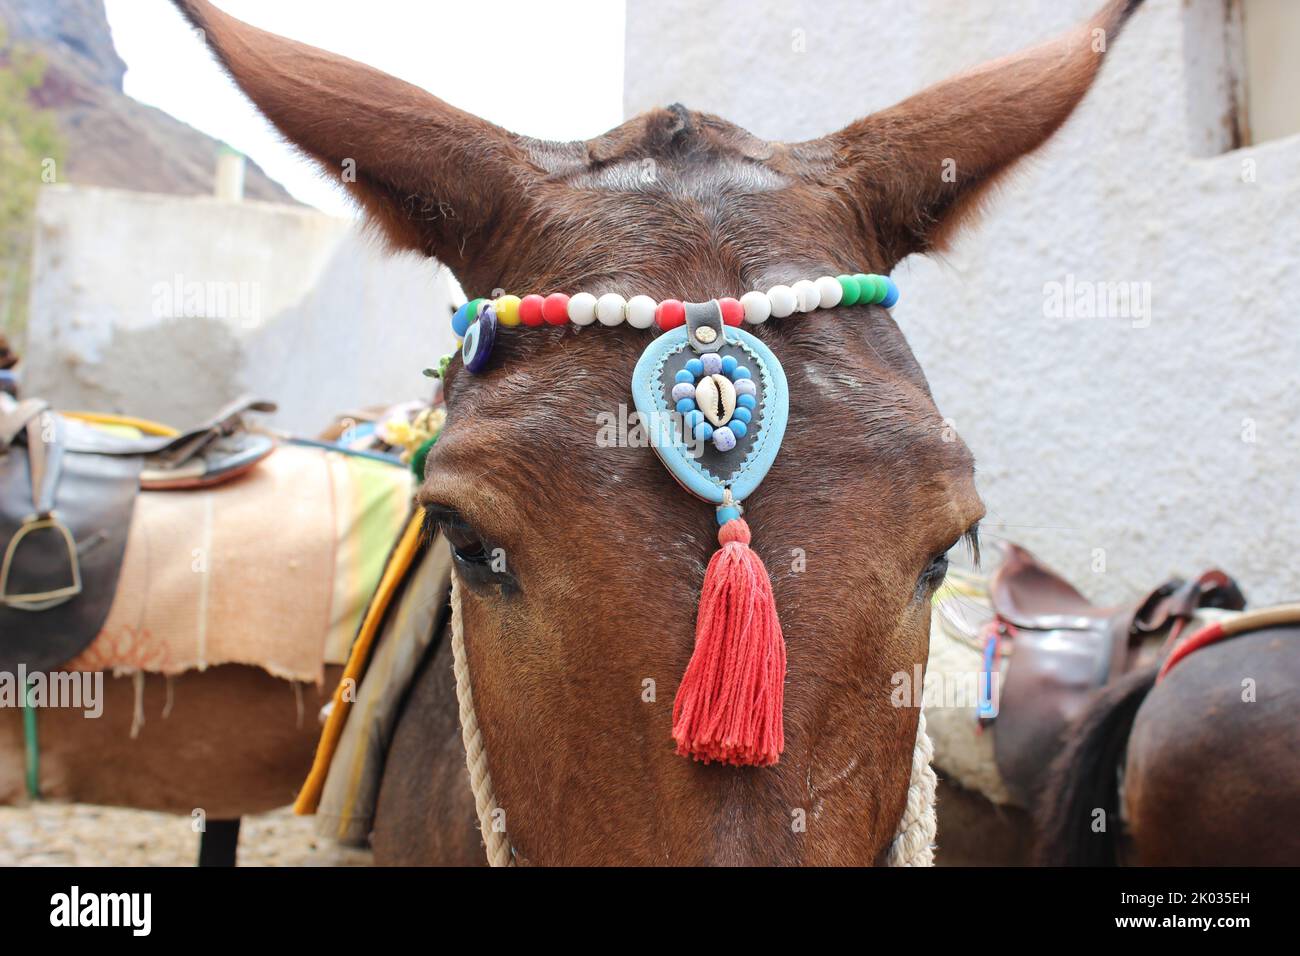 Eine Nahaufnahme eines braunen Esels mit handgefertigten Accessoires, die um den Kopf gewickelt sind Stockfoto